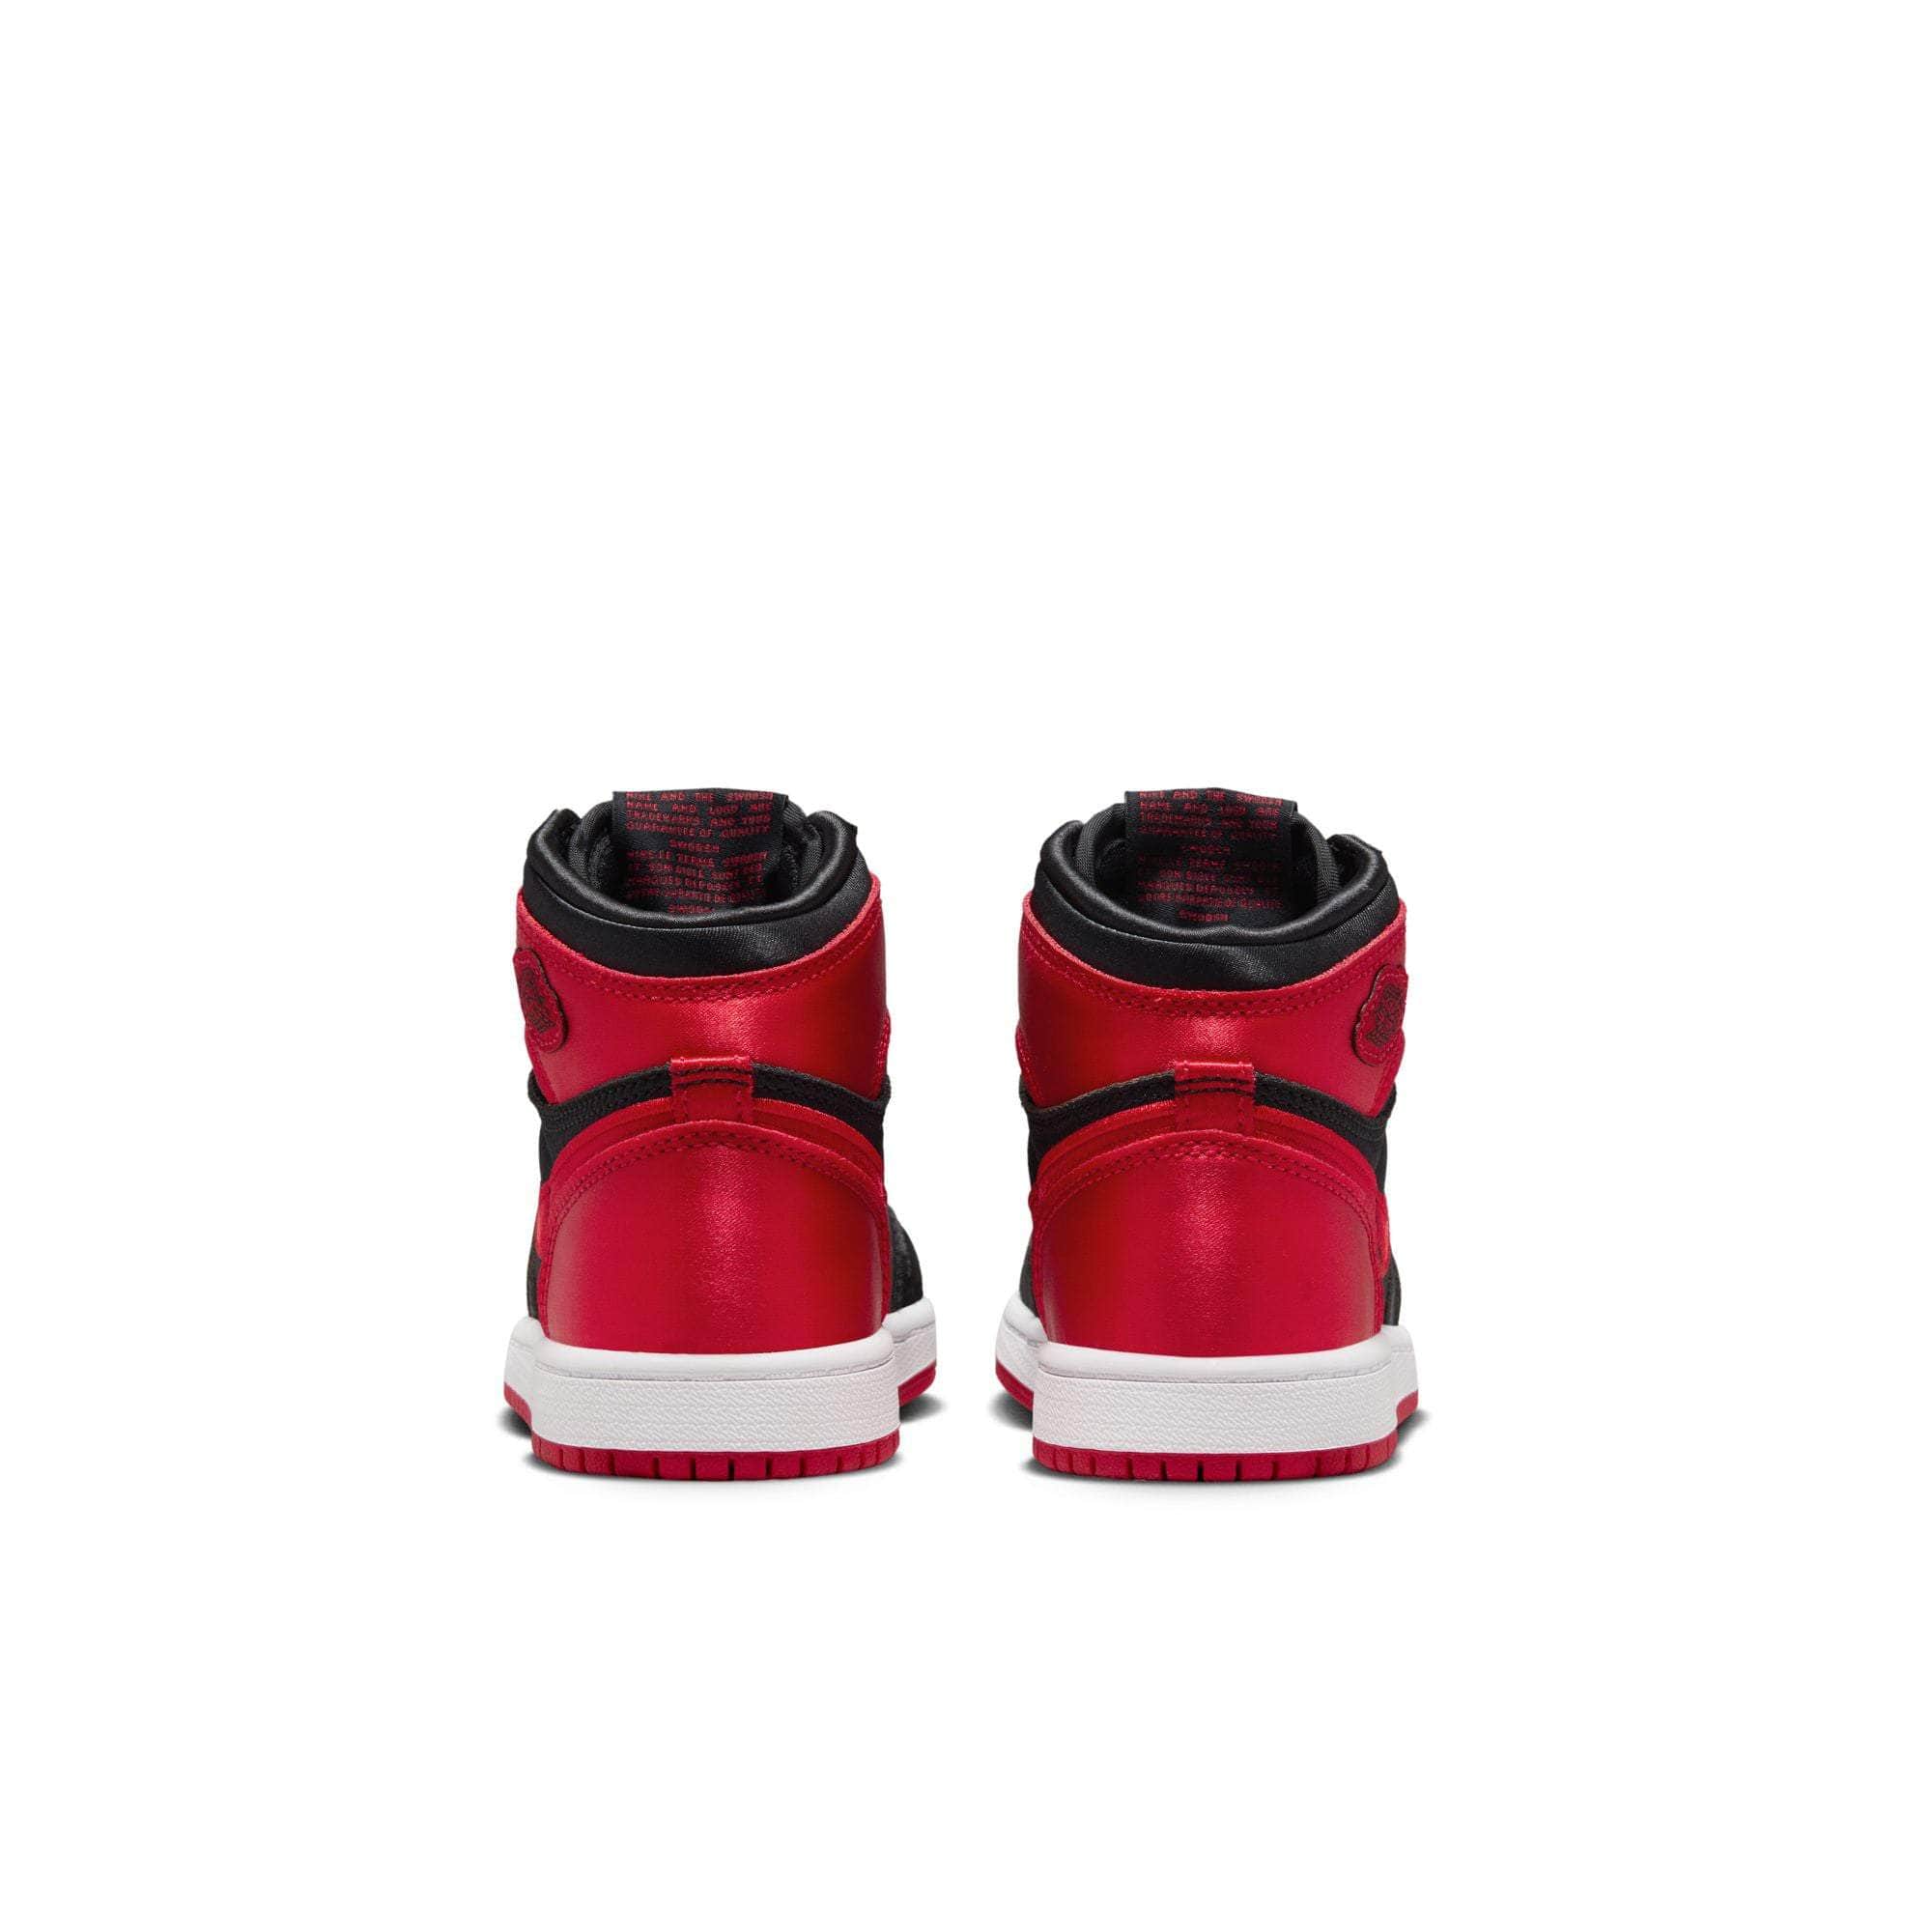 Air Jordan FOOTWEAR Air Jordan 1 Retro High OG "Satin Bred" - Kid's PS